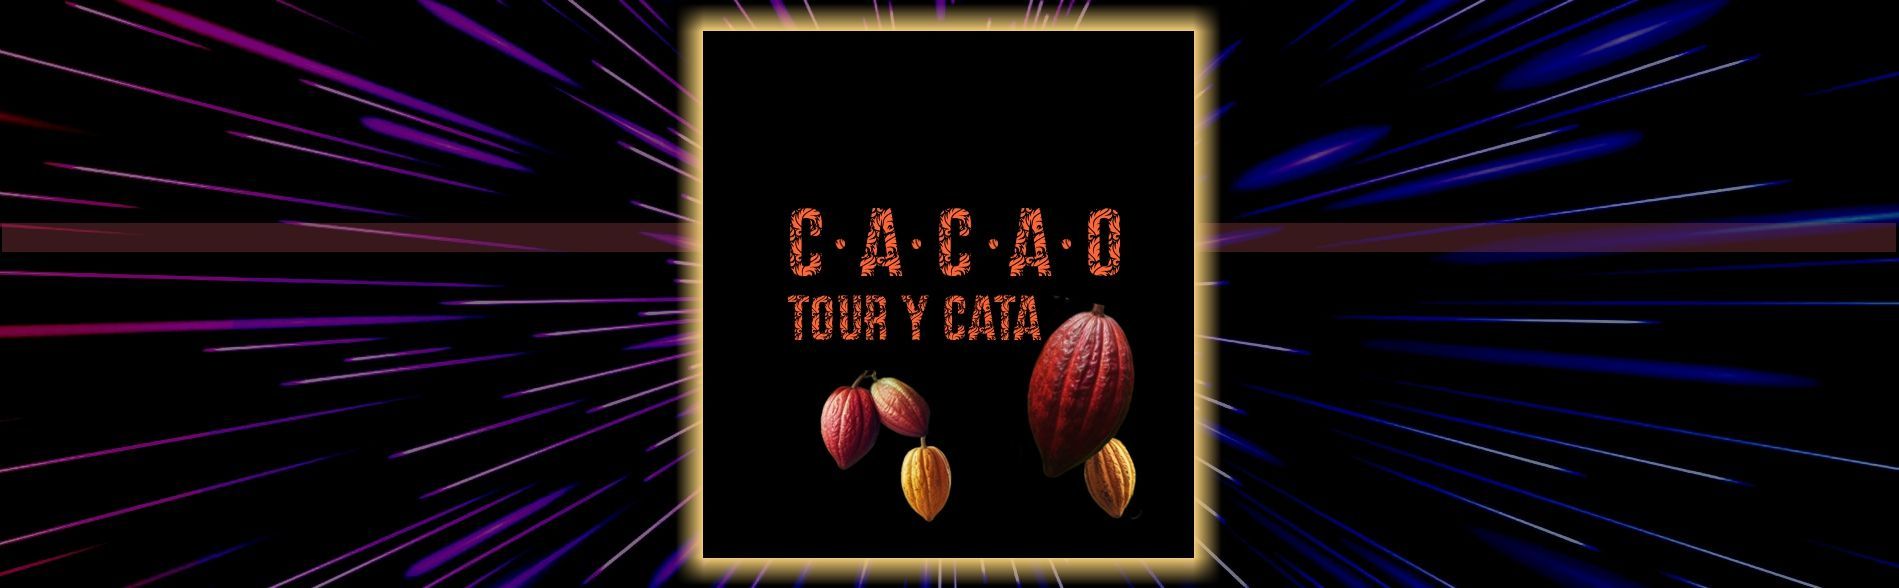 Tour cacao Hotel Catarata Río Celeste